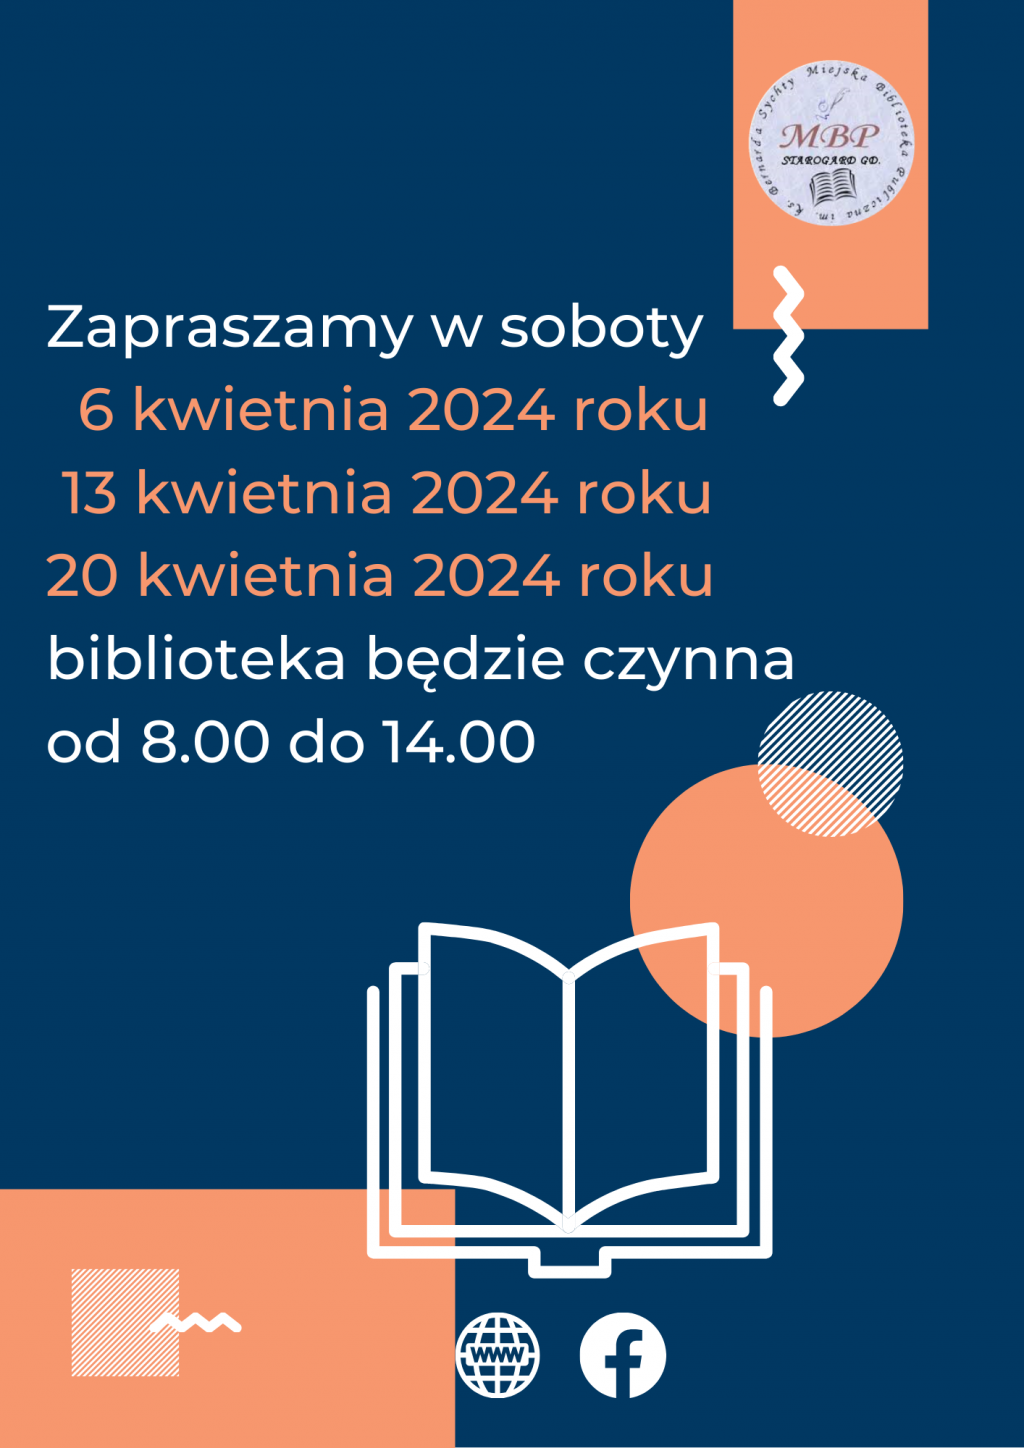 Plakat informujący o pracujących sobotach: soboty 6 kwietnia 2024, 13 kwietnia 2024 i 20 kwietnia 2024 roku, biblioteka będzie czynna od 8.00 do 14.00. Miejska Biblioteka Publiczna w Starogardzie Gdańskim.